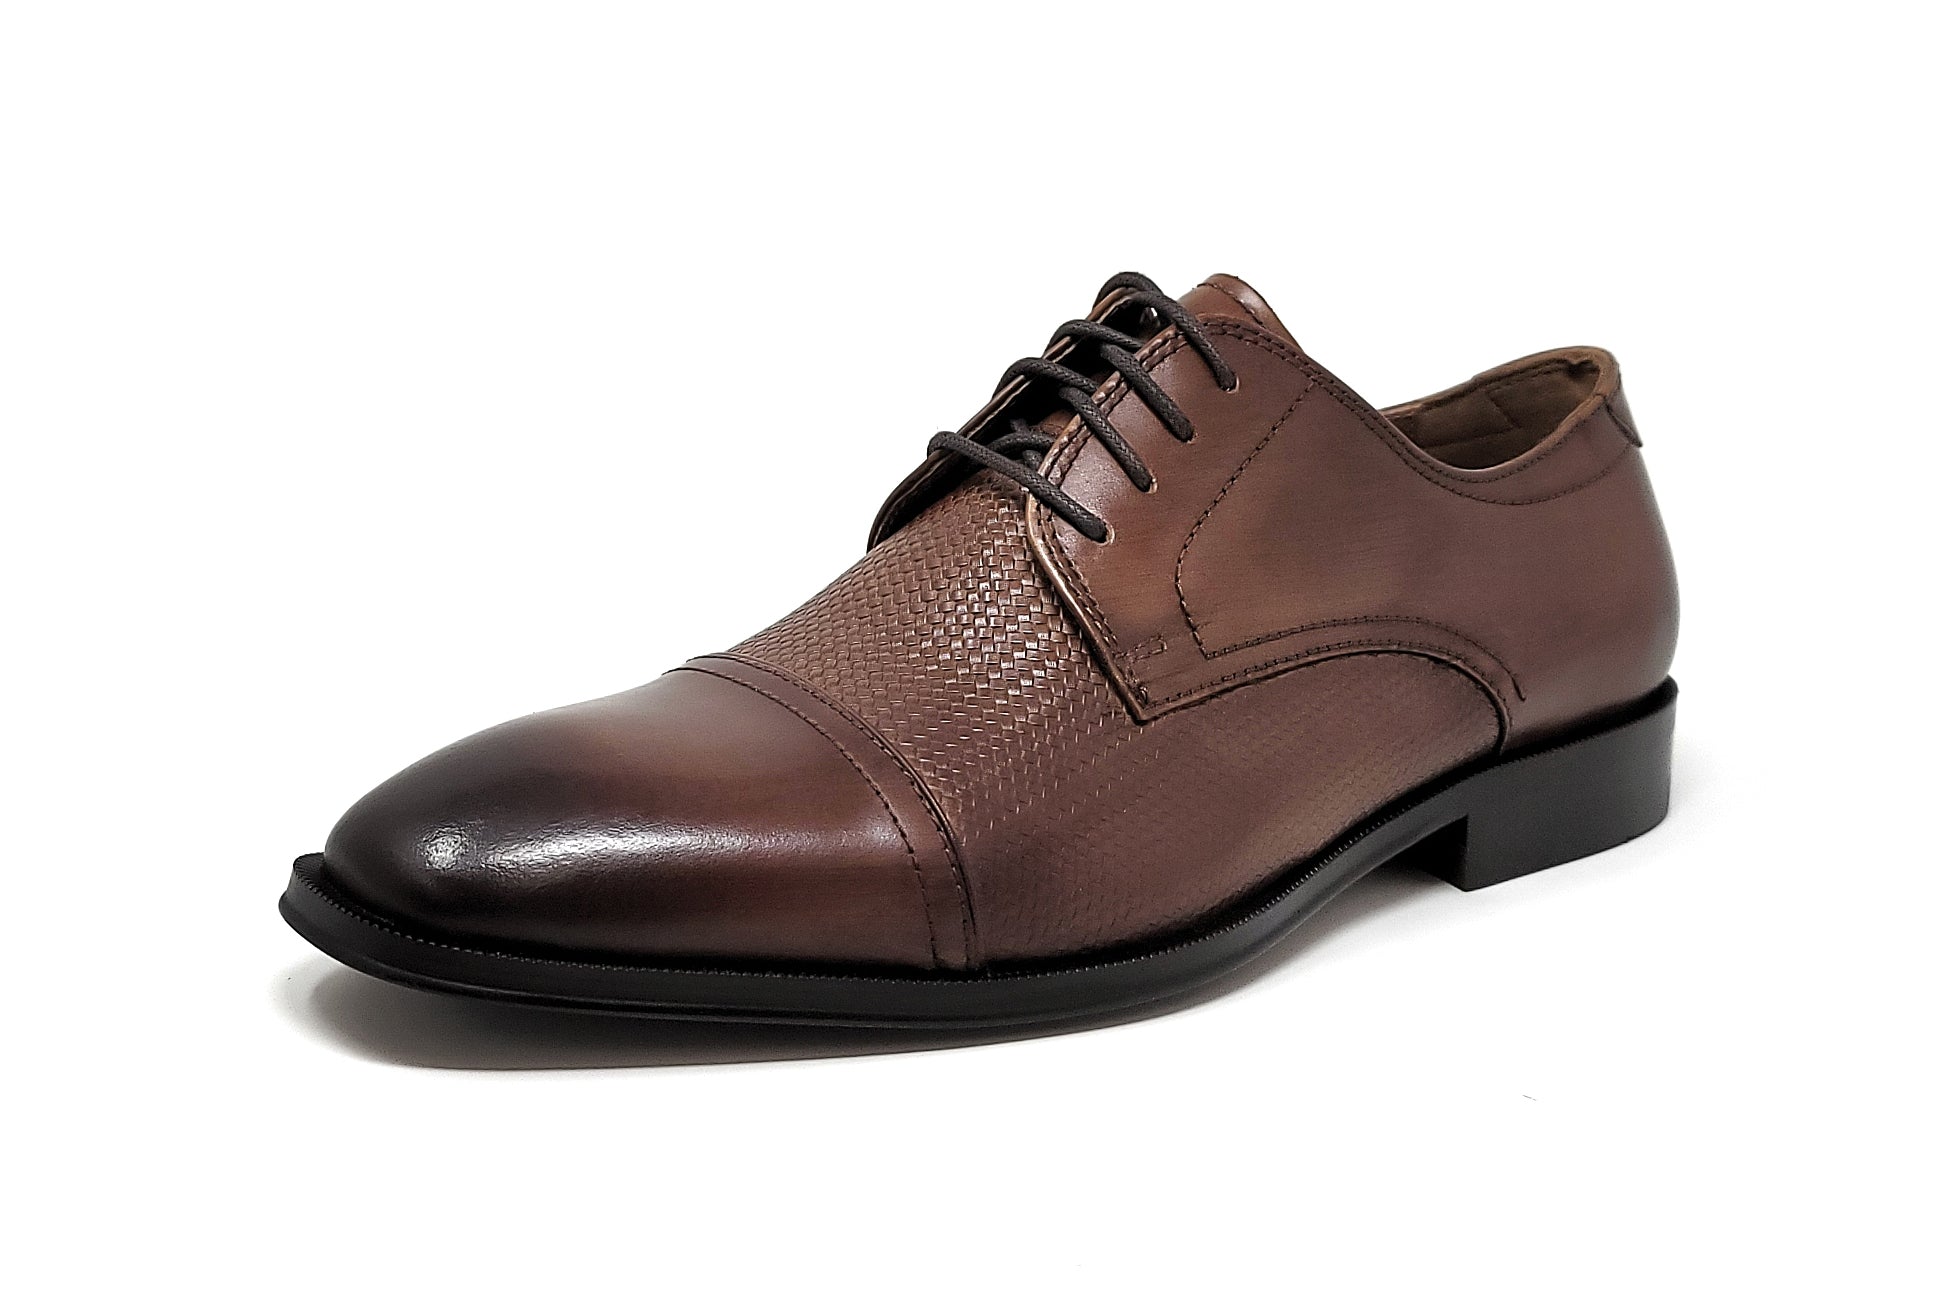 Florsheim Men's Belfast Cap Toe Oxford Cognac 3E Wide Shoes